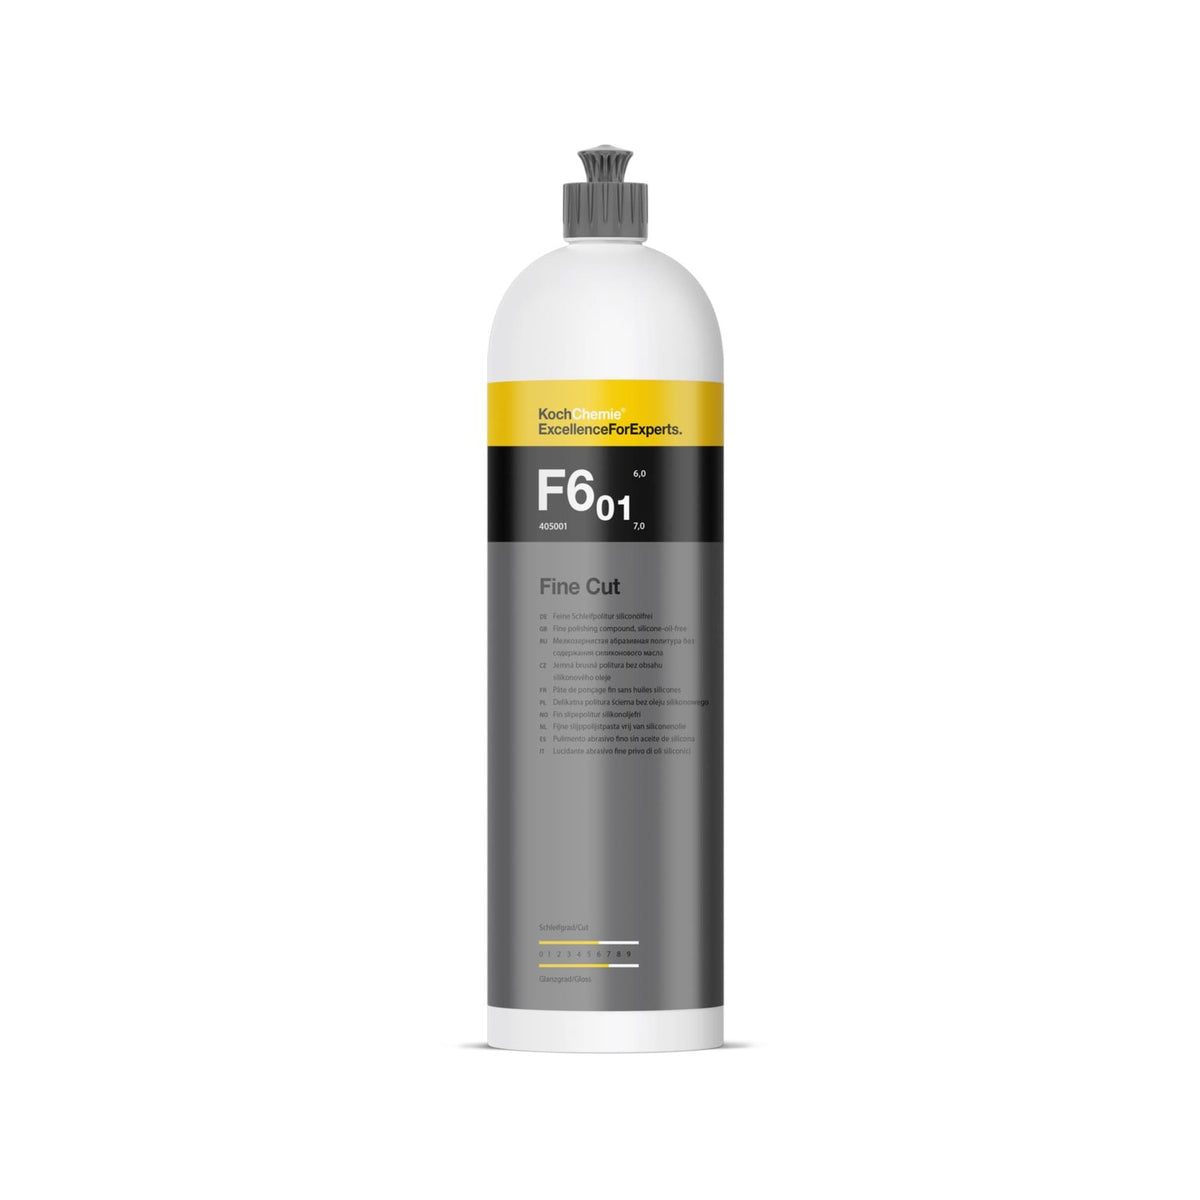 Koch Chemie F6.01 Fine Cut – Medium & Finishing Polishing Compound